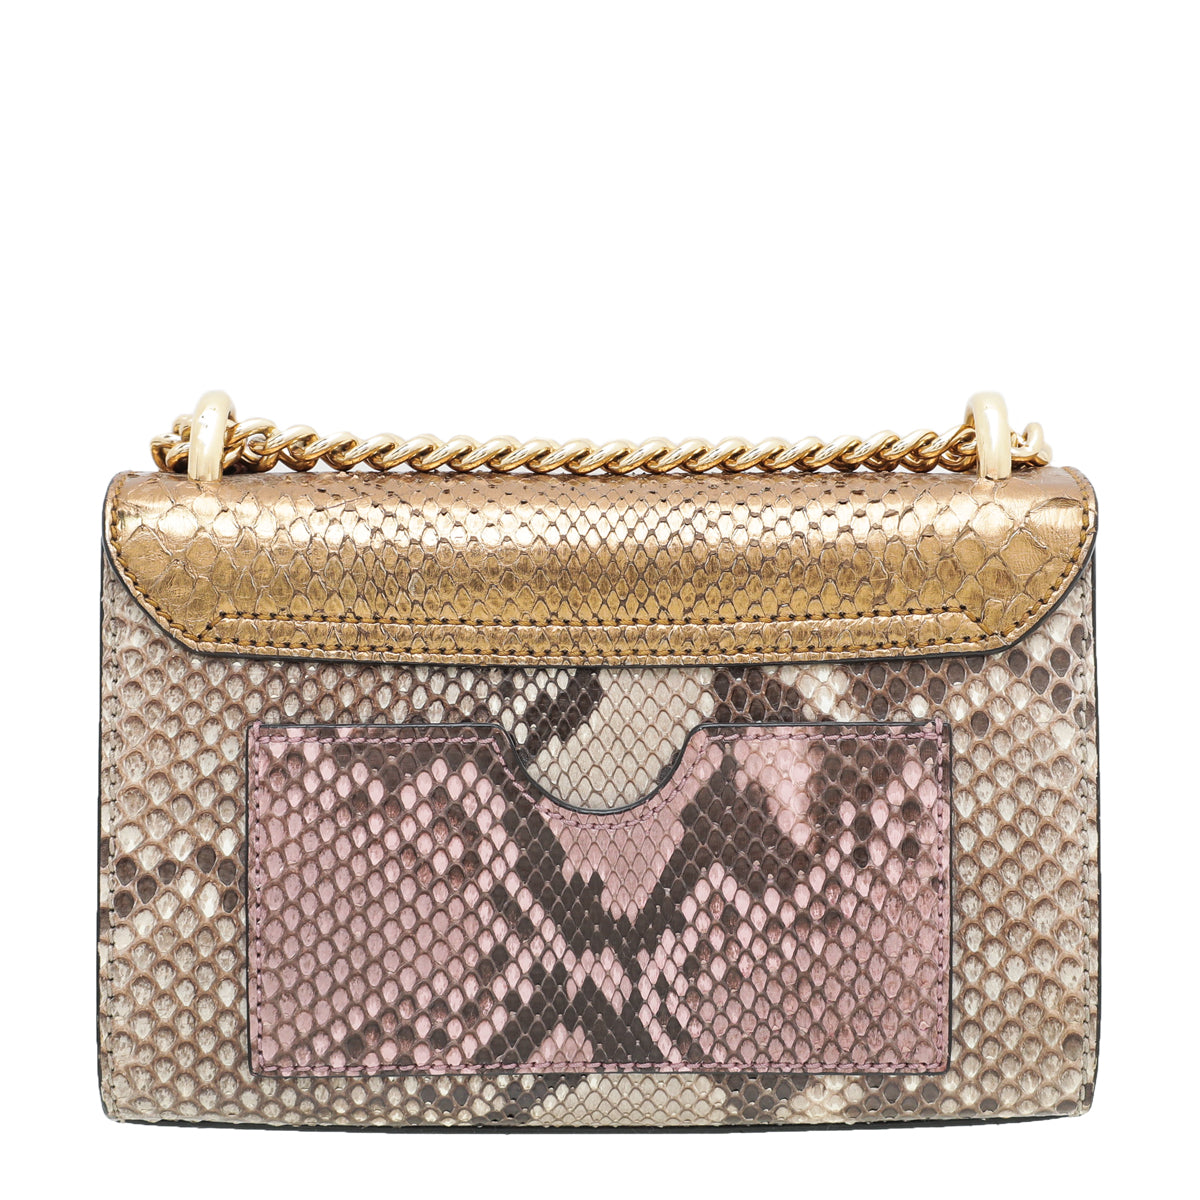 Gucci Bicolor Python Padlock Small Bag